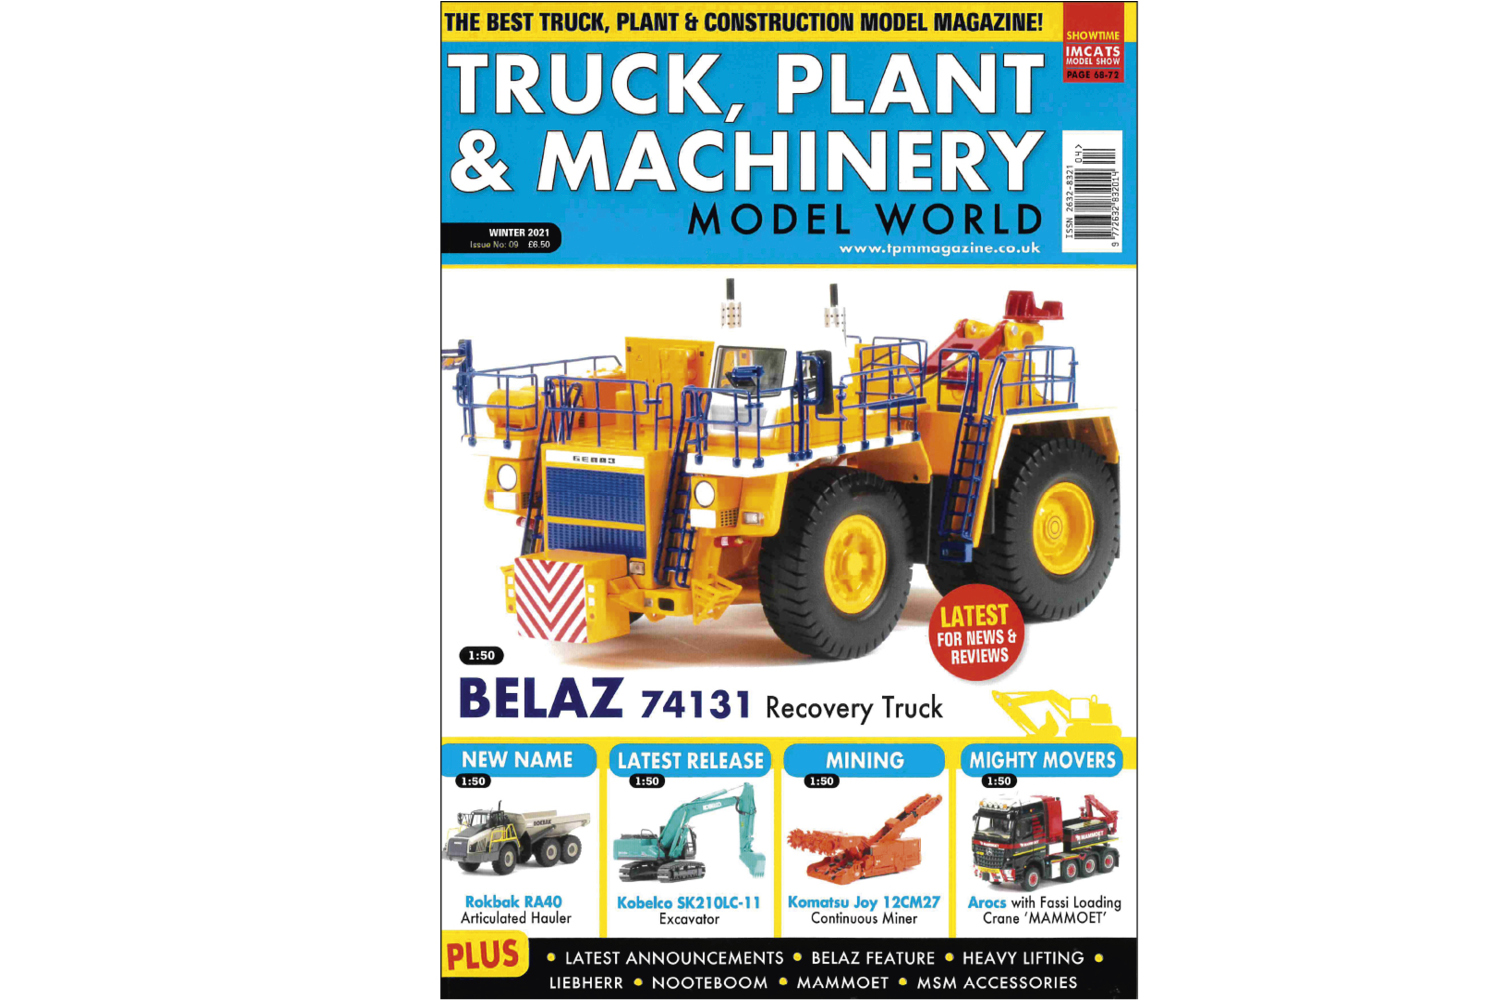 Das Fachmagazin "Truck, Plant & Machinery" berichtet über Conrad